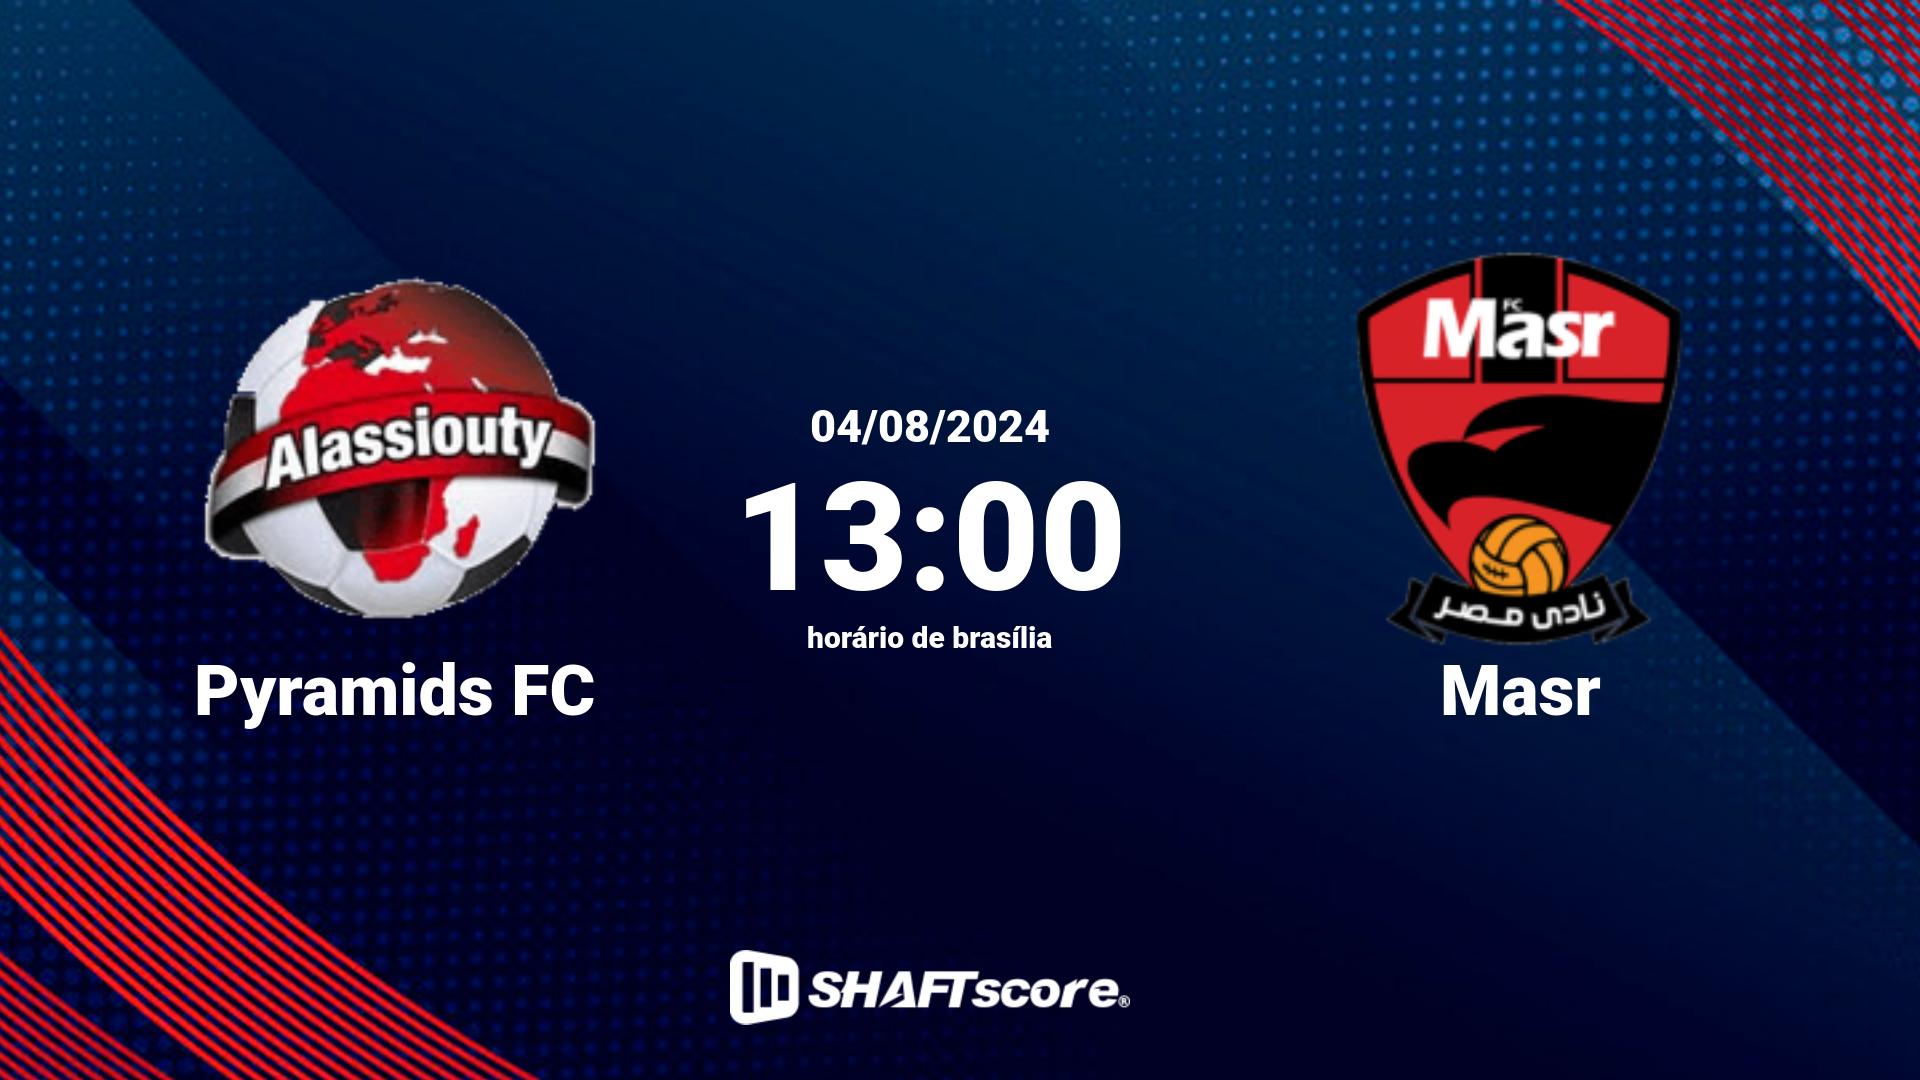 Estatísticas do jogo Pyramids FC vs Masr 04.08 13:00